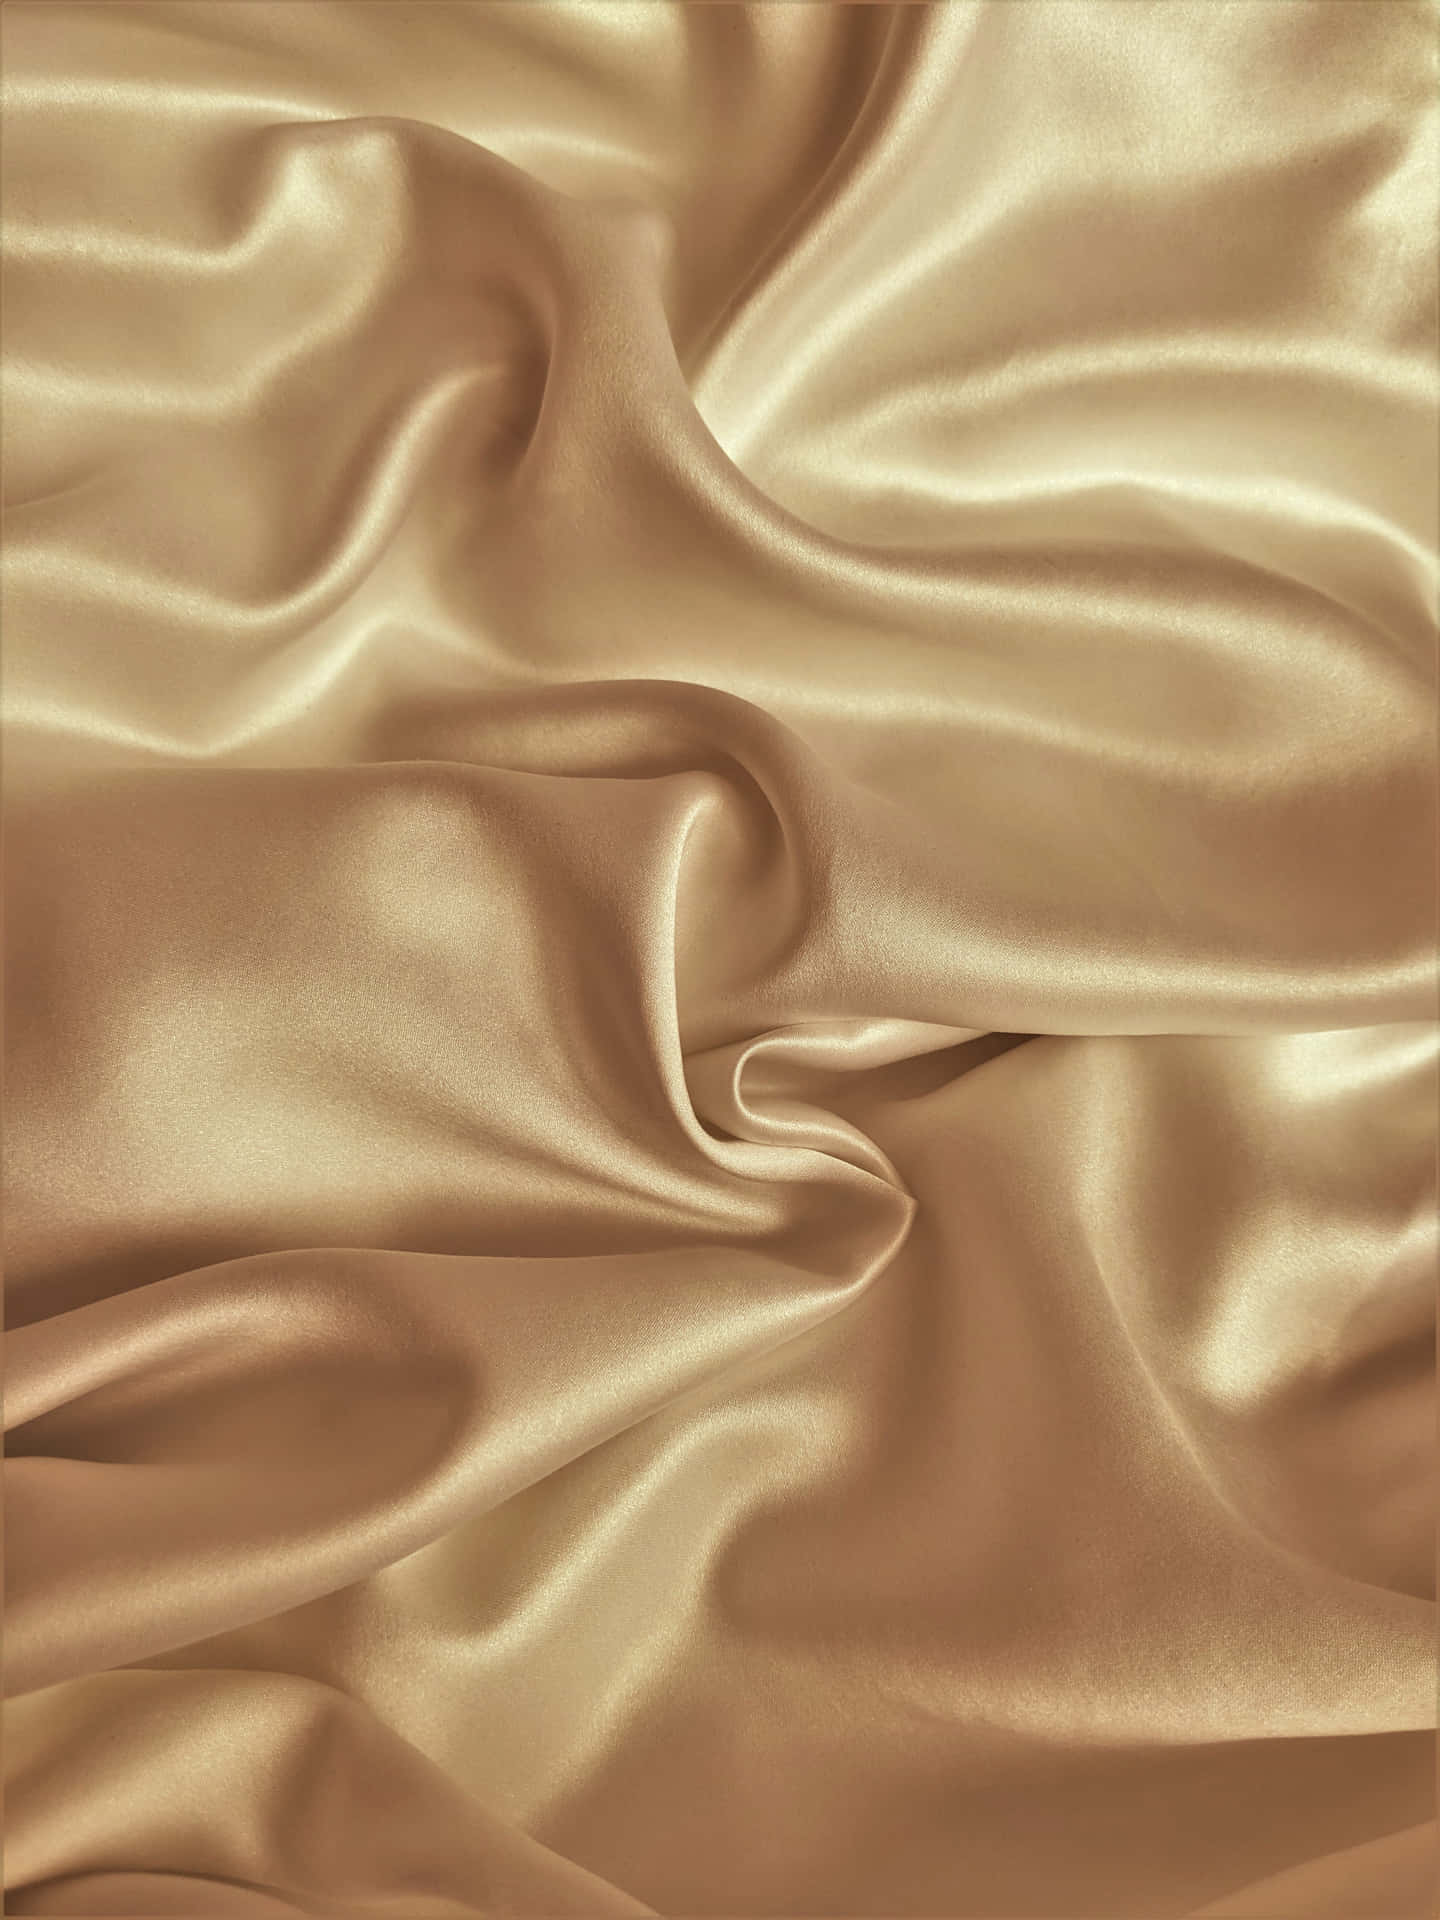 Silk Gold - Relax and Enjoy a Luxurious Night Wallpaper